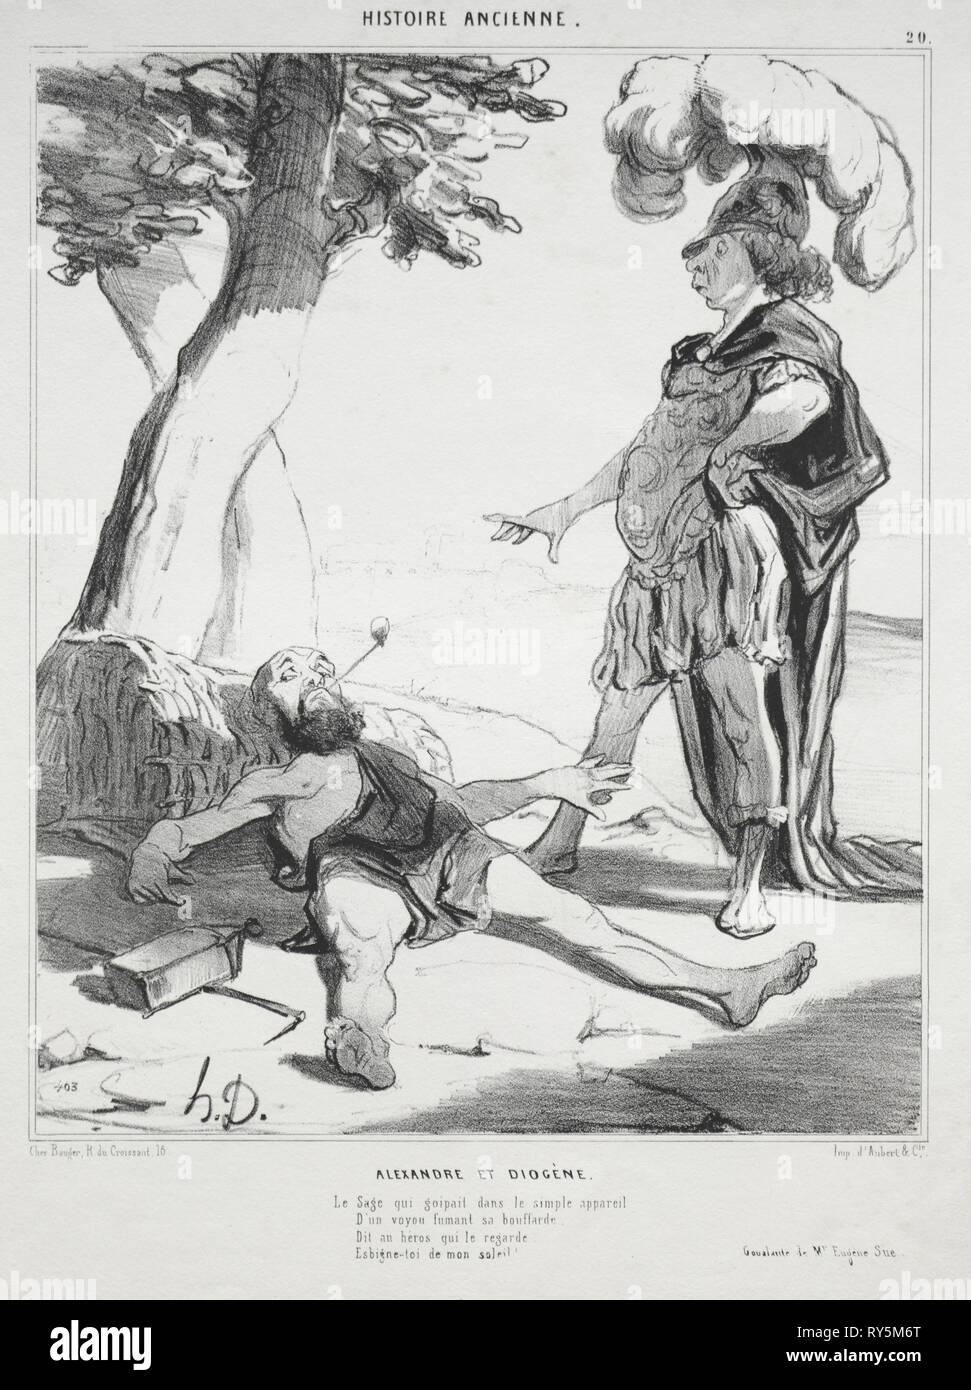 Pubblicato in le Charivari (no du 14 aoüt 1842): storia antica, la piastra 20: Alexander e Diogenes, 14 agosto 1842. Honoré Daumier (Francese, 1808-1879), Aubert. Litografia; foglio: 33,8 x 25,4 cm (13 5/16 x 10 in.); immagine: 26,2 x 21,5 cm (10 5/16 x 8 7/16 in Foto Stock